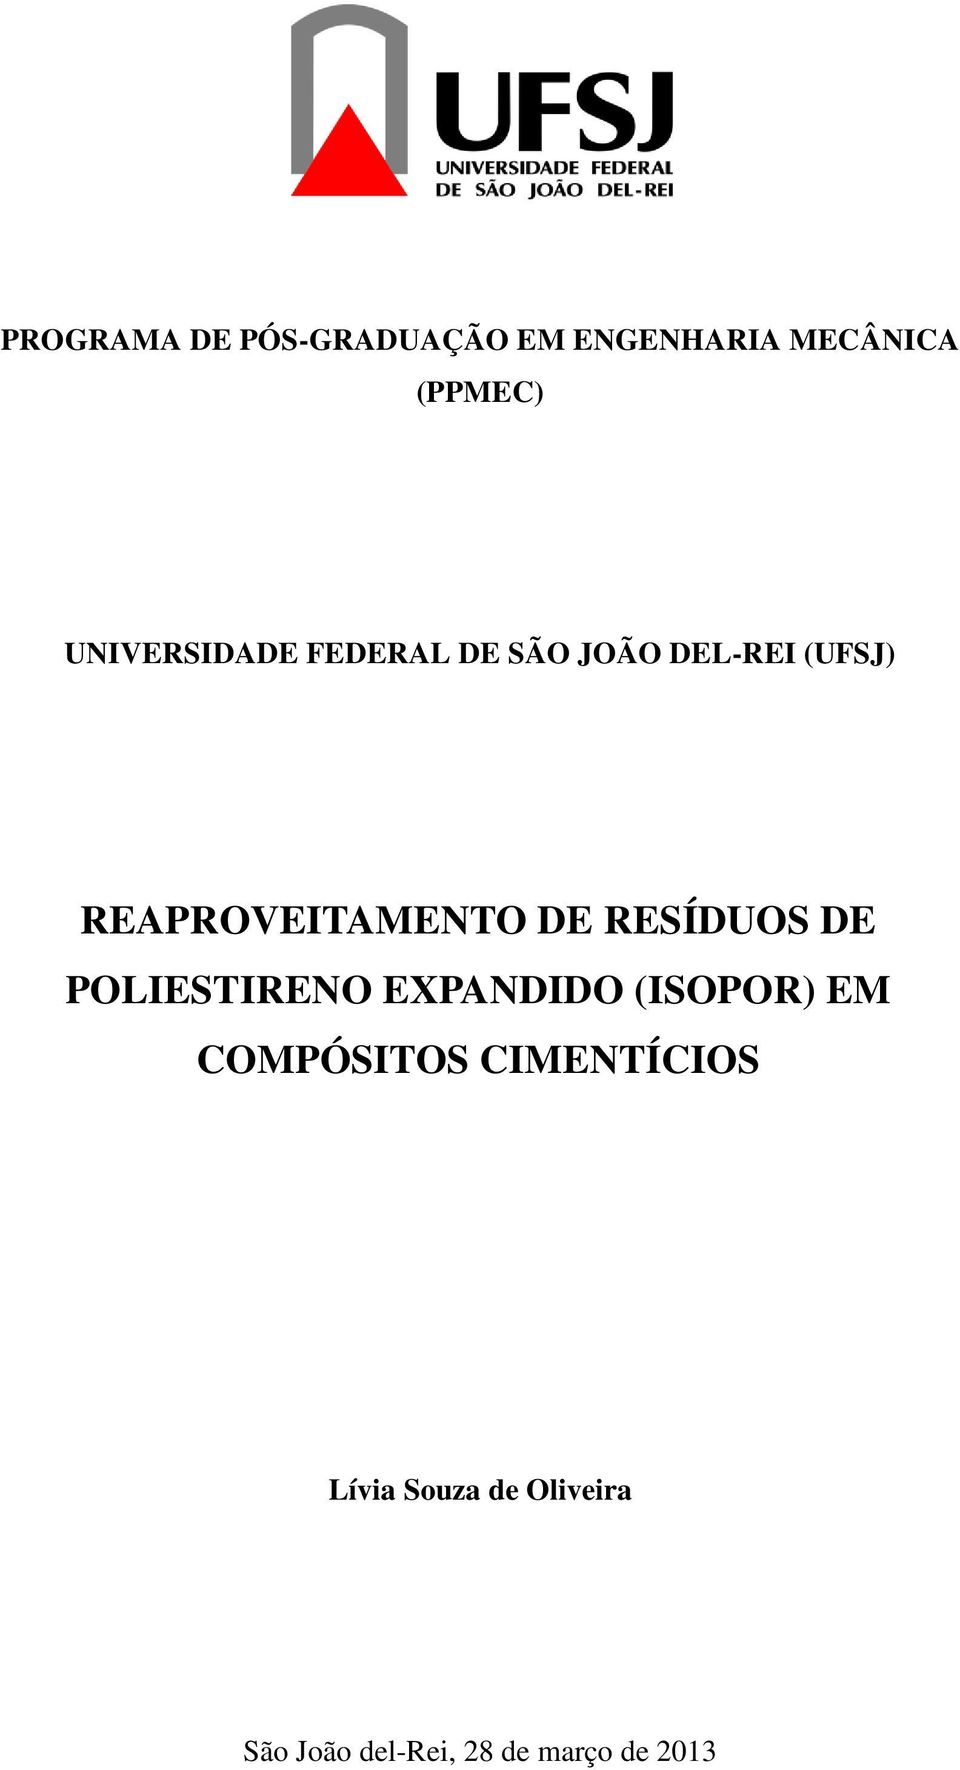 REAPROVEITAMENTO DE RESÍDUOS DE POLIESTIRENO EXPANDIDO (ISOPOR)